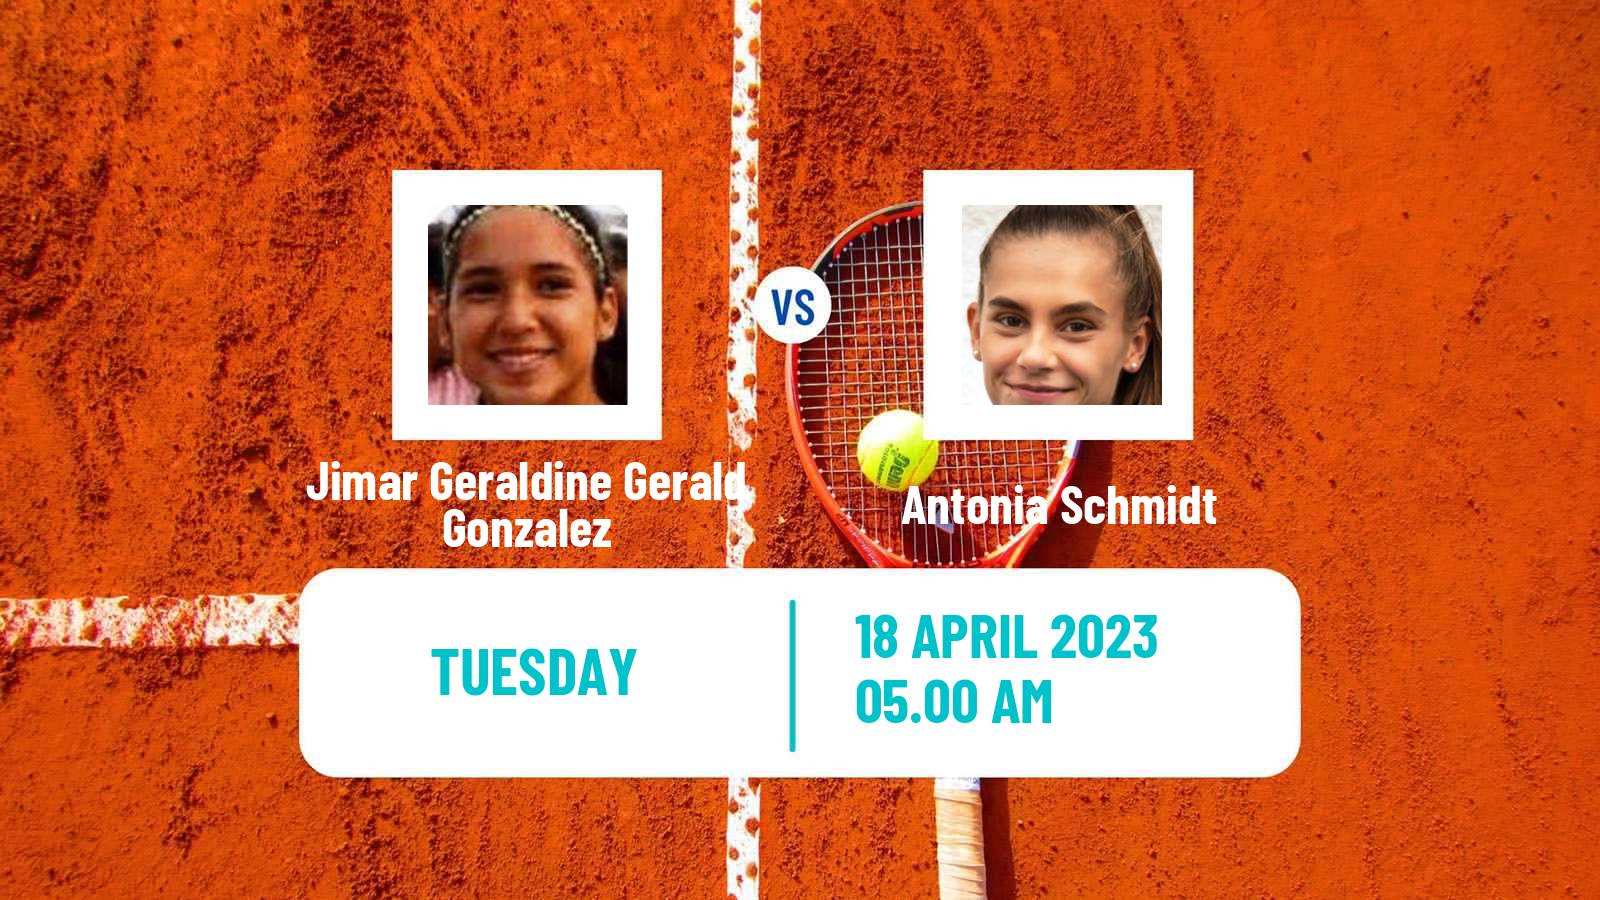 Tennis ITF Tournaments Jimar Geraldine Gerald Gonzalez - Antonia Schmidt